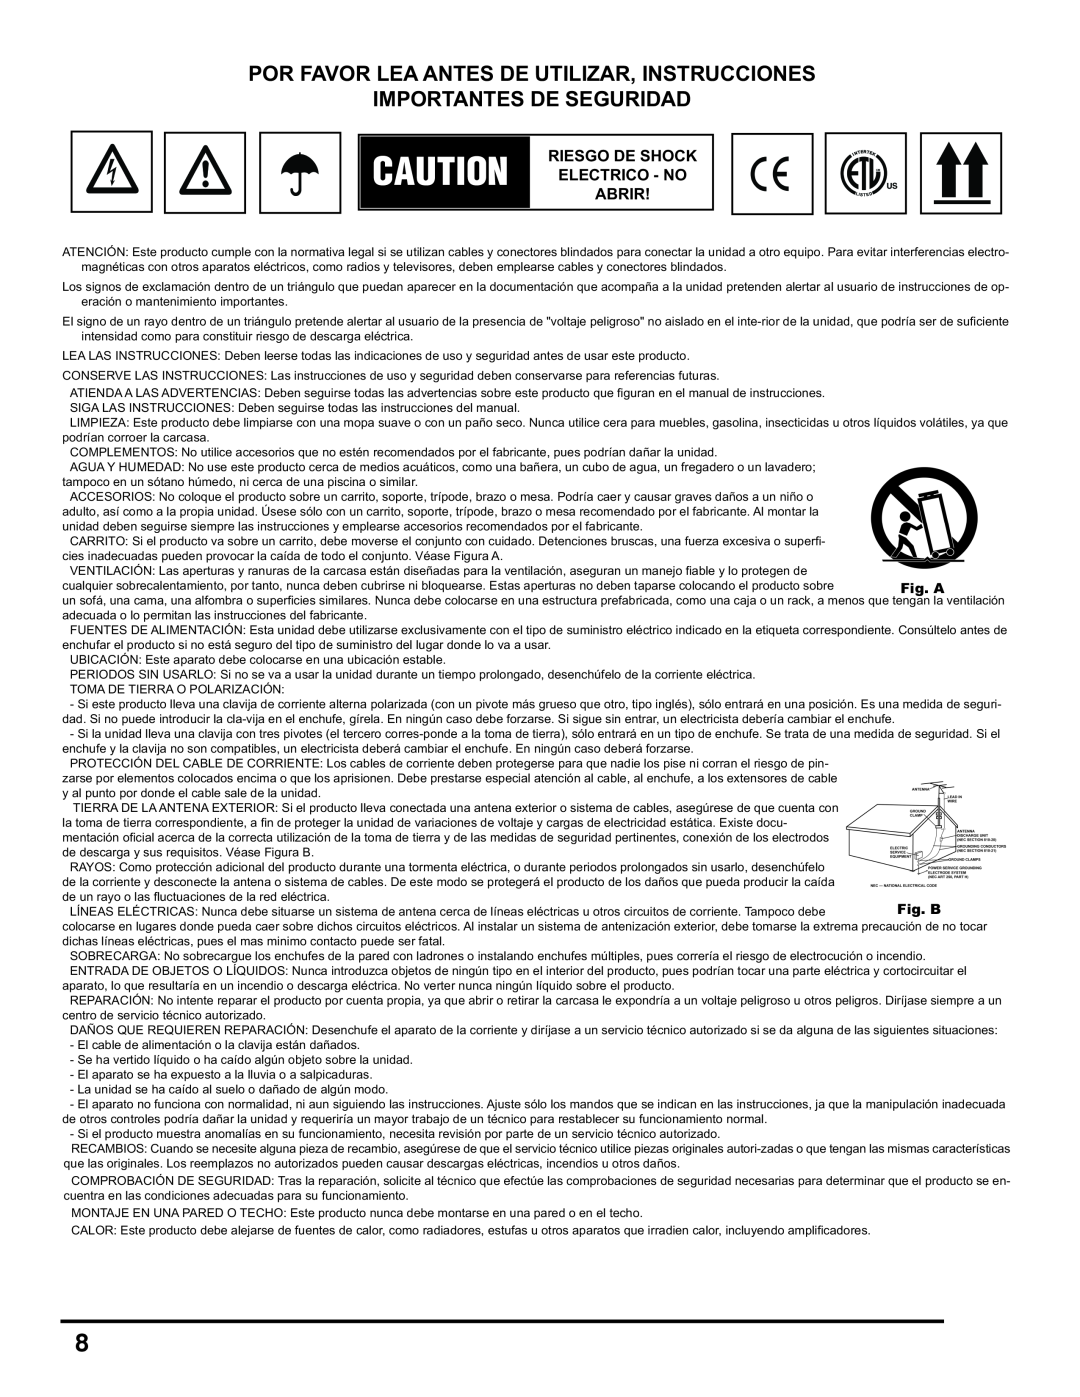 Gemini CDM-3200 manual Por Favor Lea, Importantes De Seguridad, De Utilizar, Instrucciones, Fig. A, Fig. B 